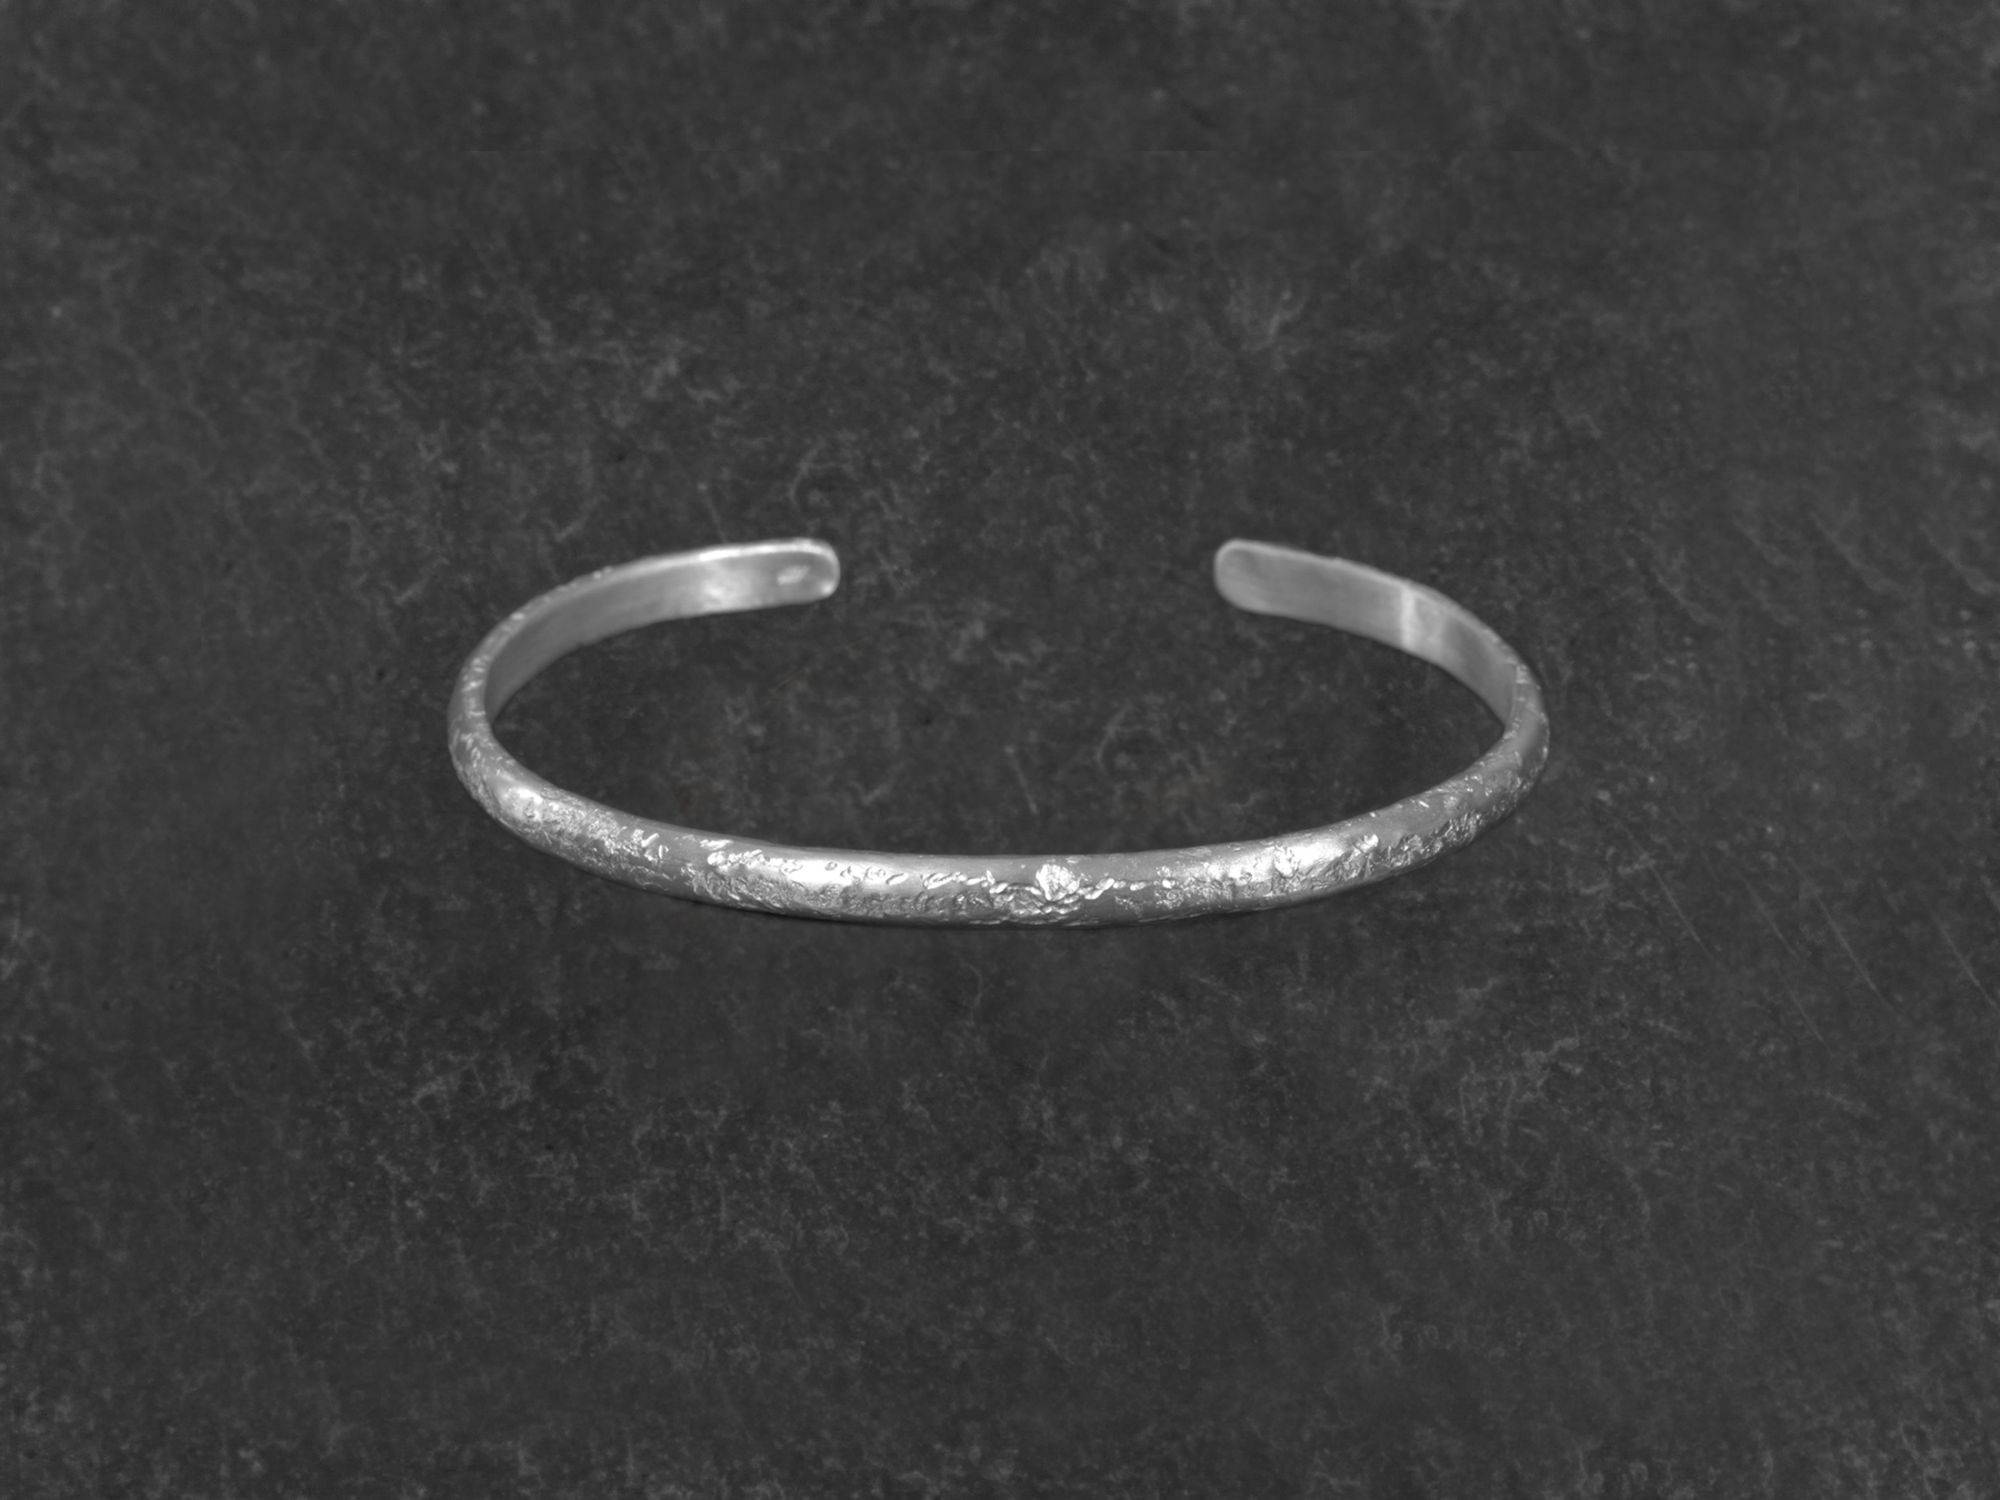 Bracelets Stella Argent palladié martelé pierre homme par Emmanuelle Zysman